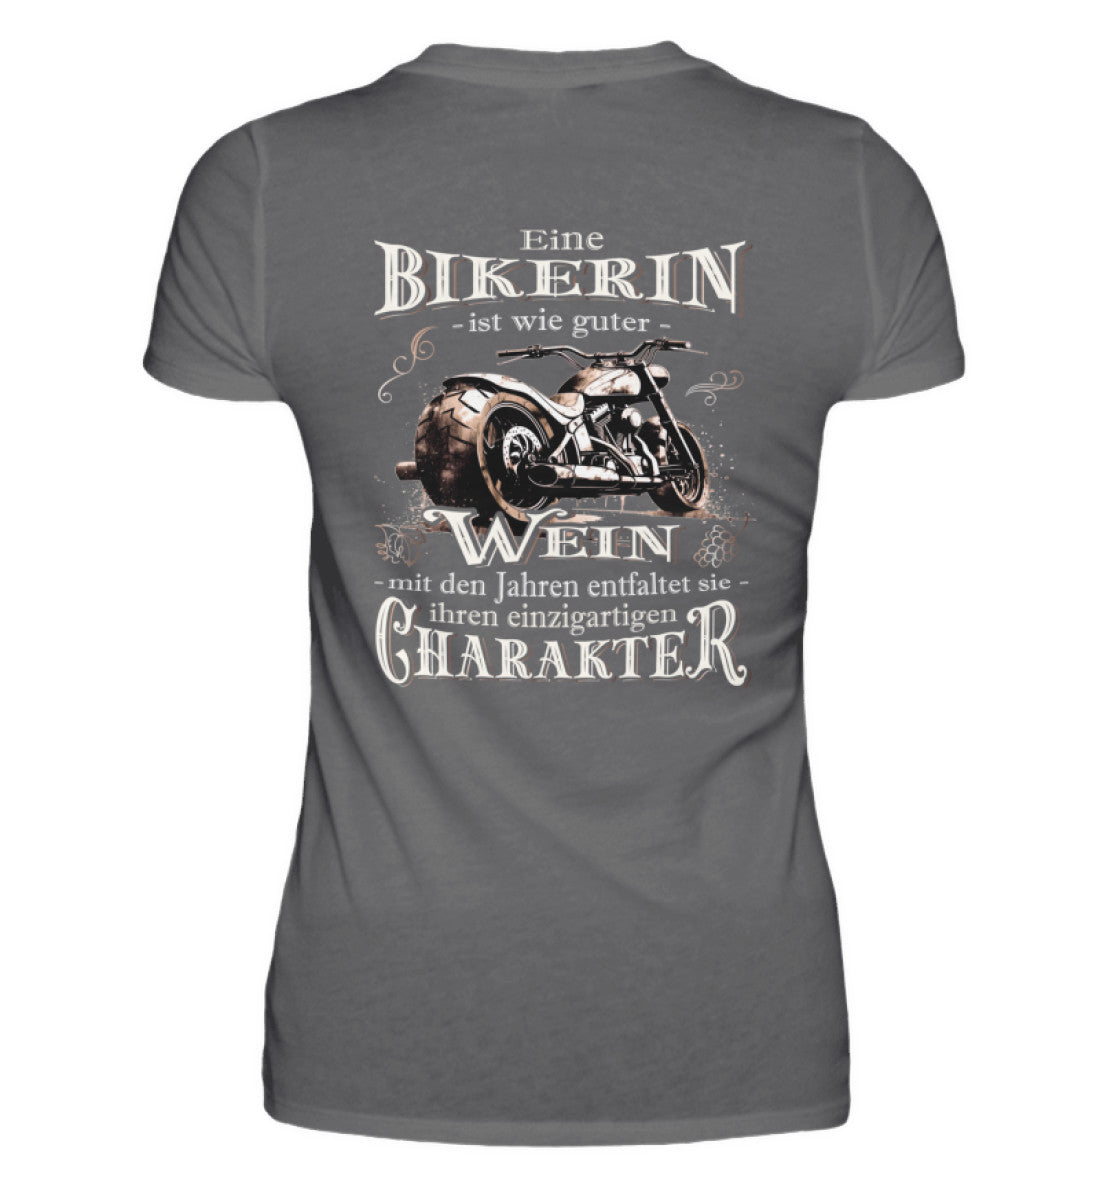 Ein Bikerin T-Shirt für Motorradfahrerinnen von Wingbikers mit dem Aufdruck, Eine Bikerin ist wie guter Wein - mit den Jahren entfaltet sie ihren einzigartigen Charakter - mit Back Print, in dunkelgrau.